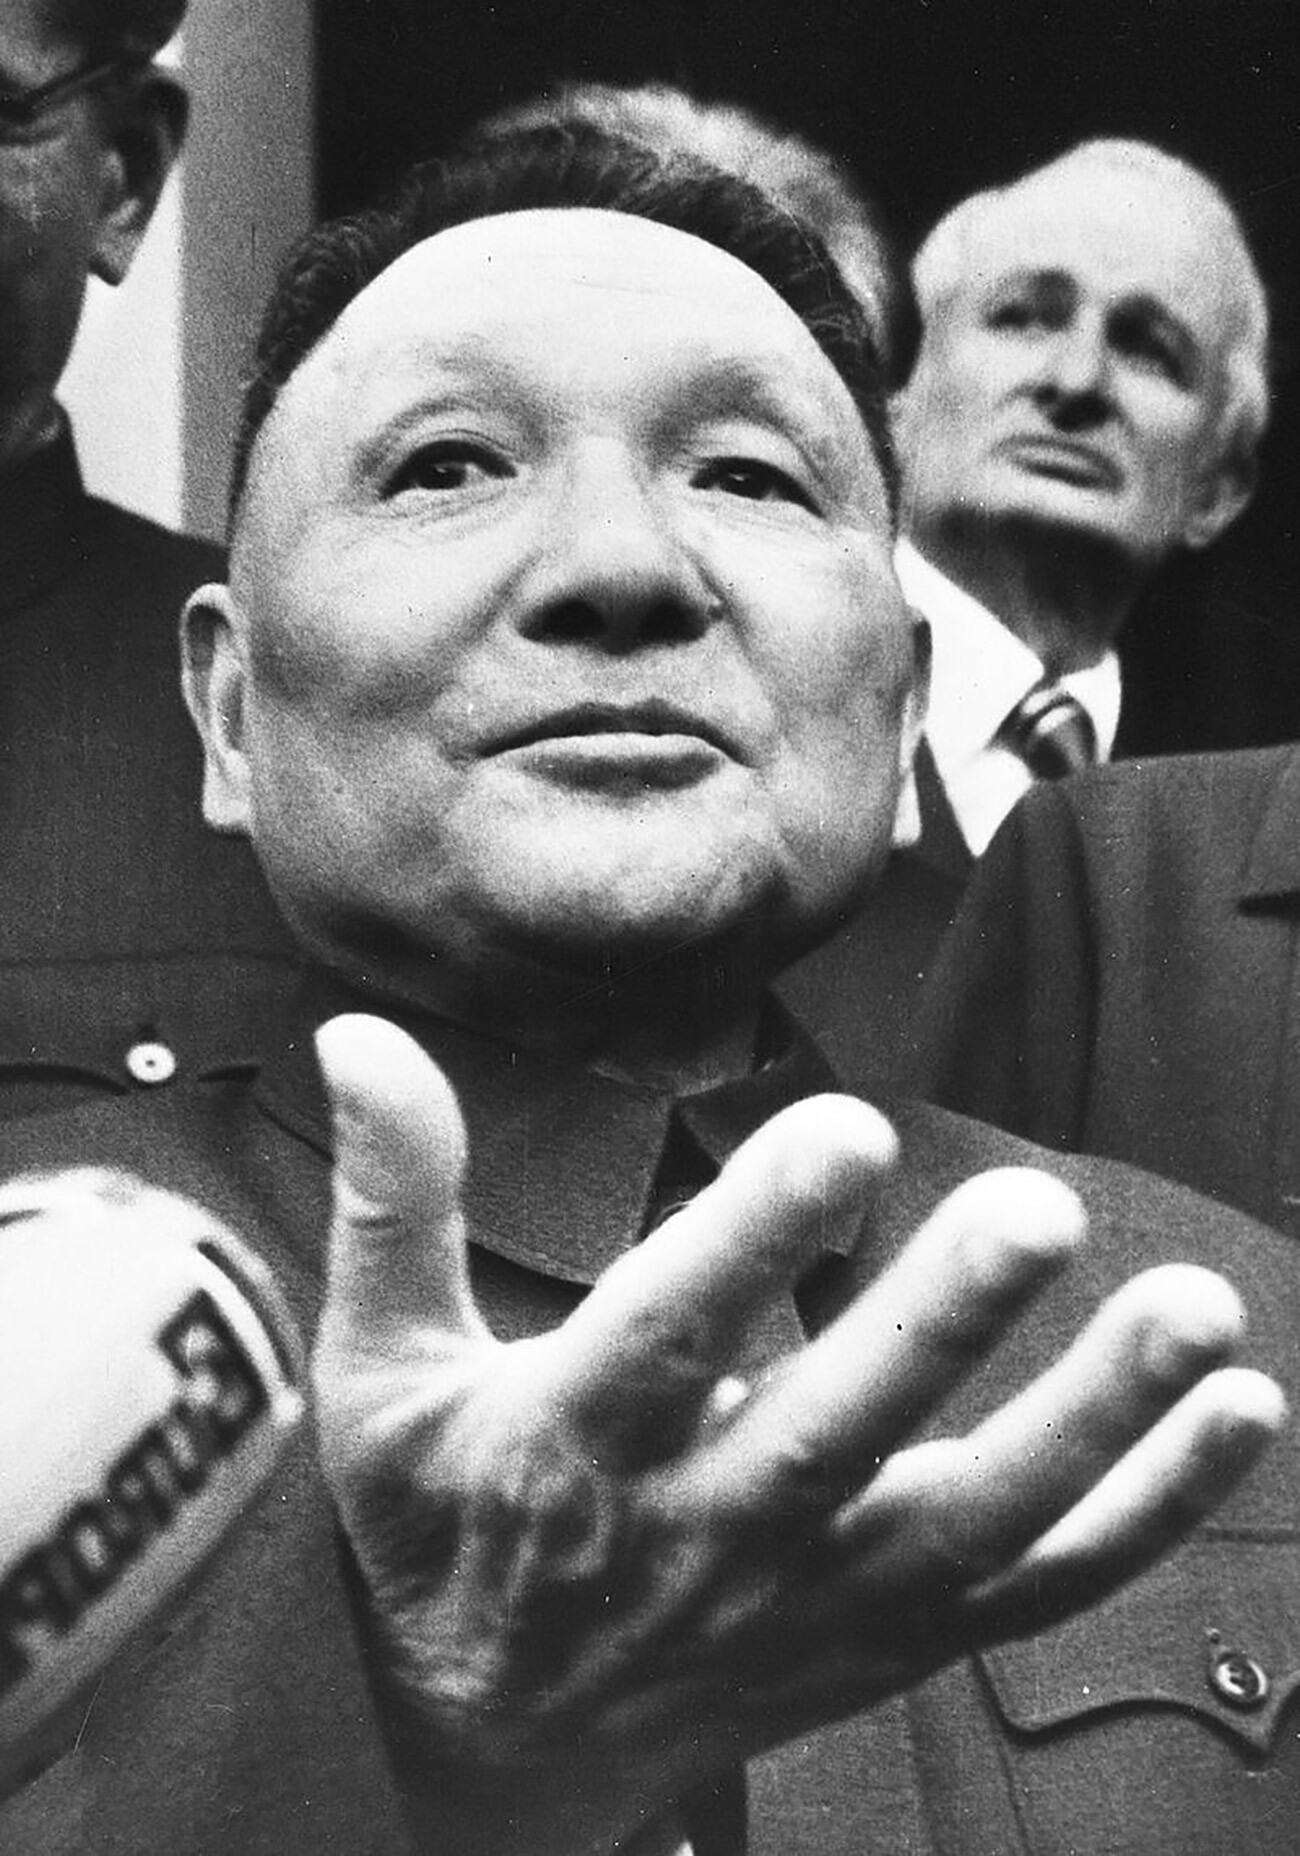 Deng Xiaoping è detto il “capo architetto” della riforma economica cinese, che a partire dal 1978 introdusse elementi di economia di mercato nel sistema socialista
